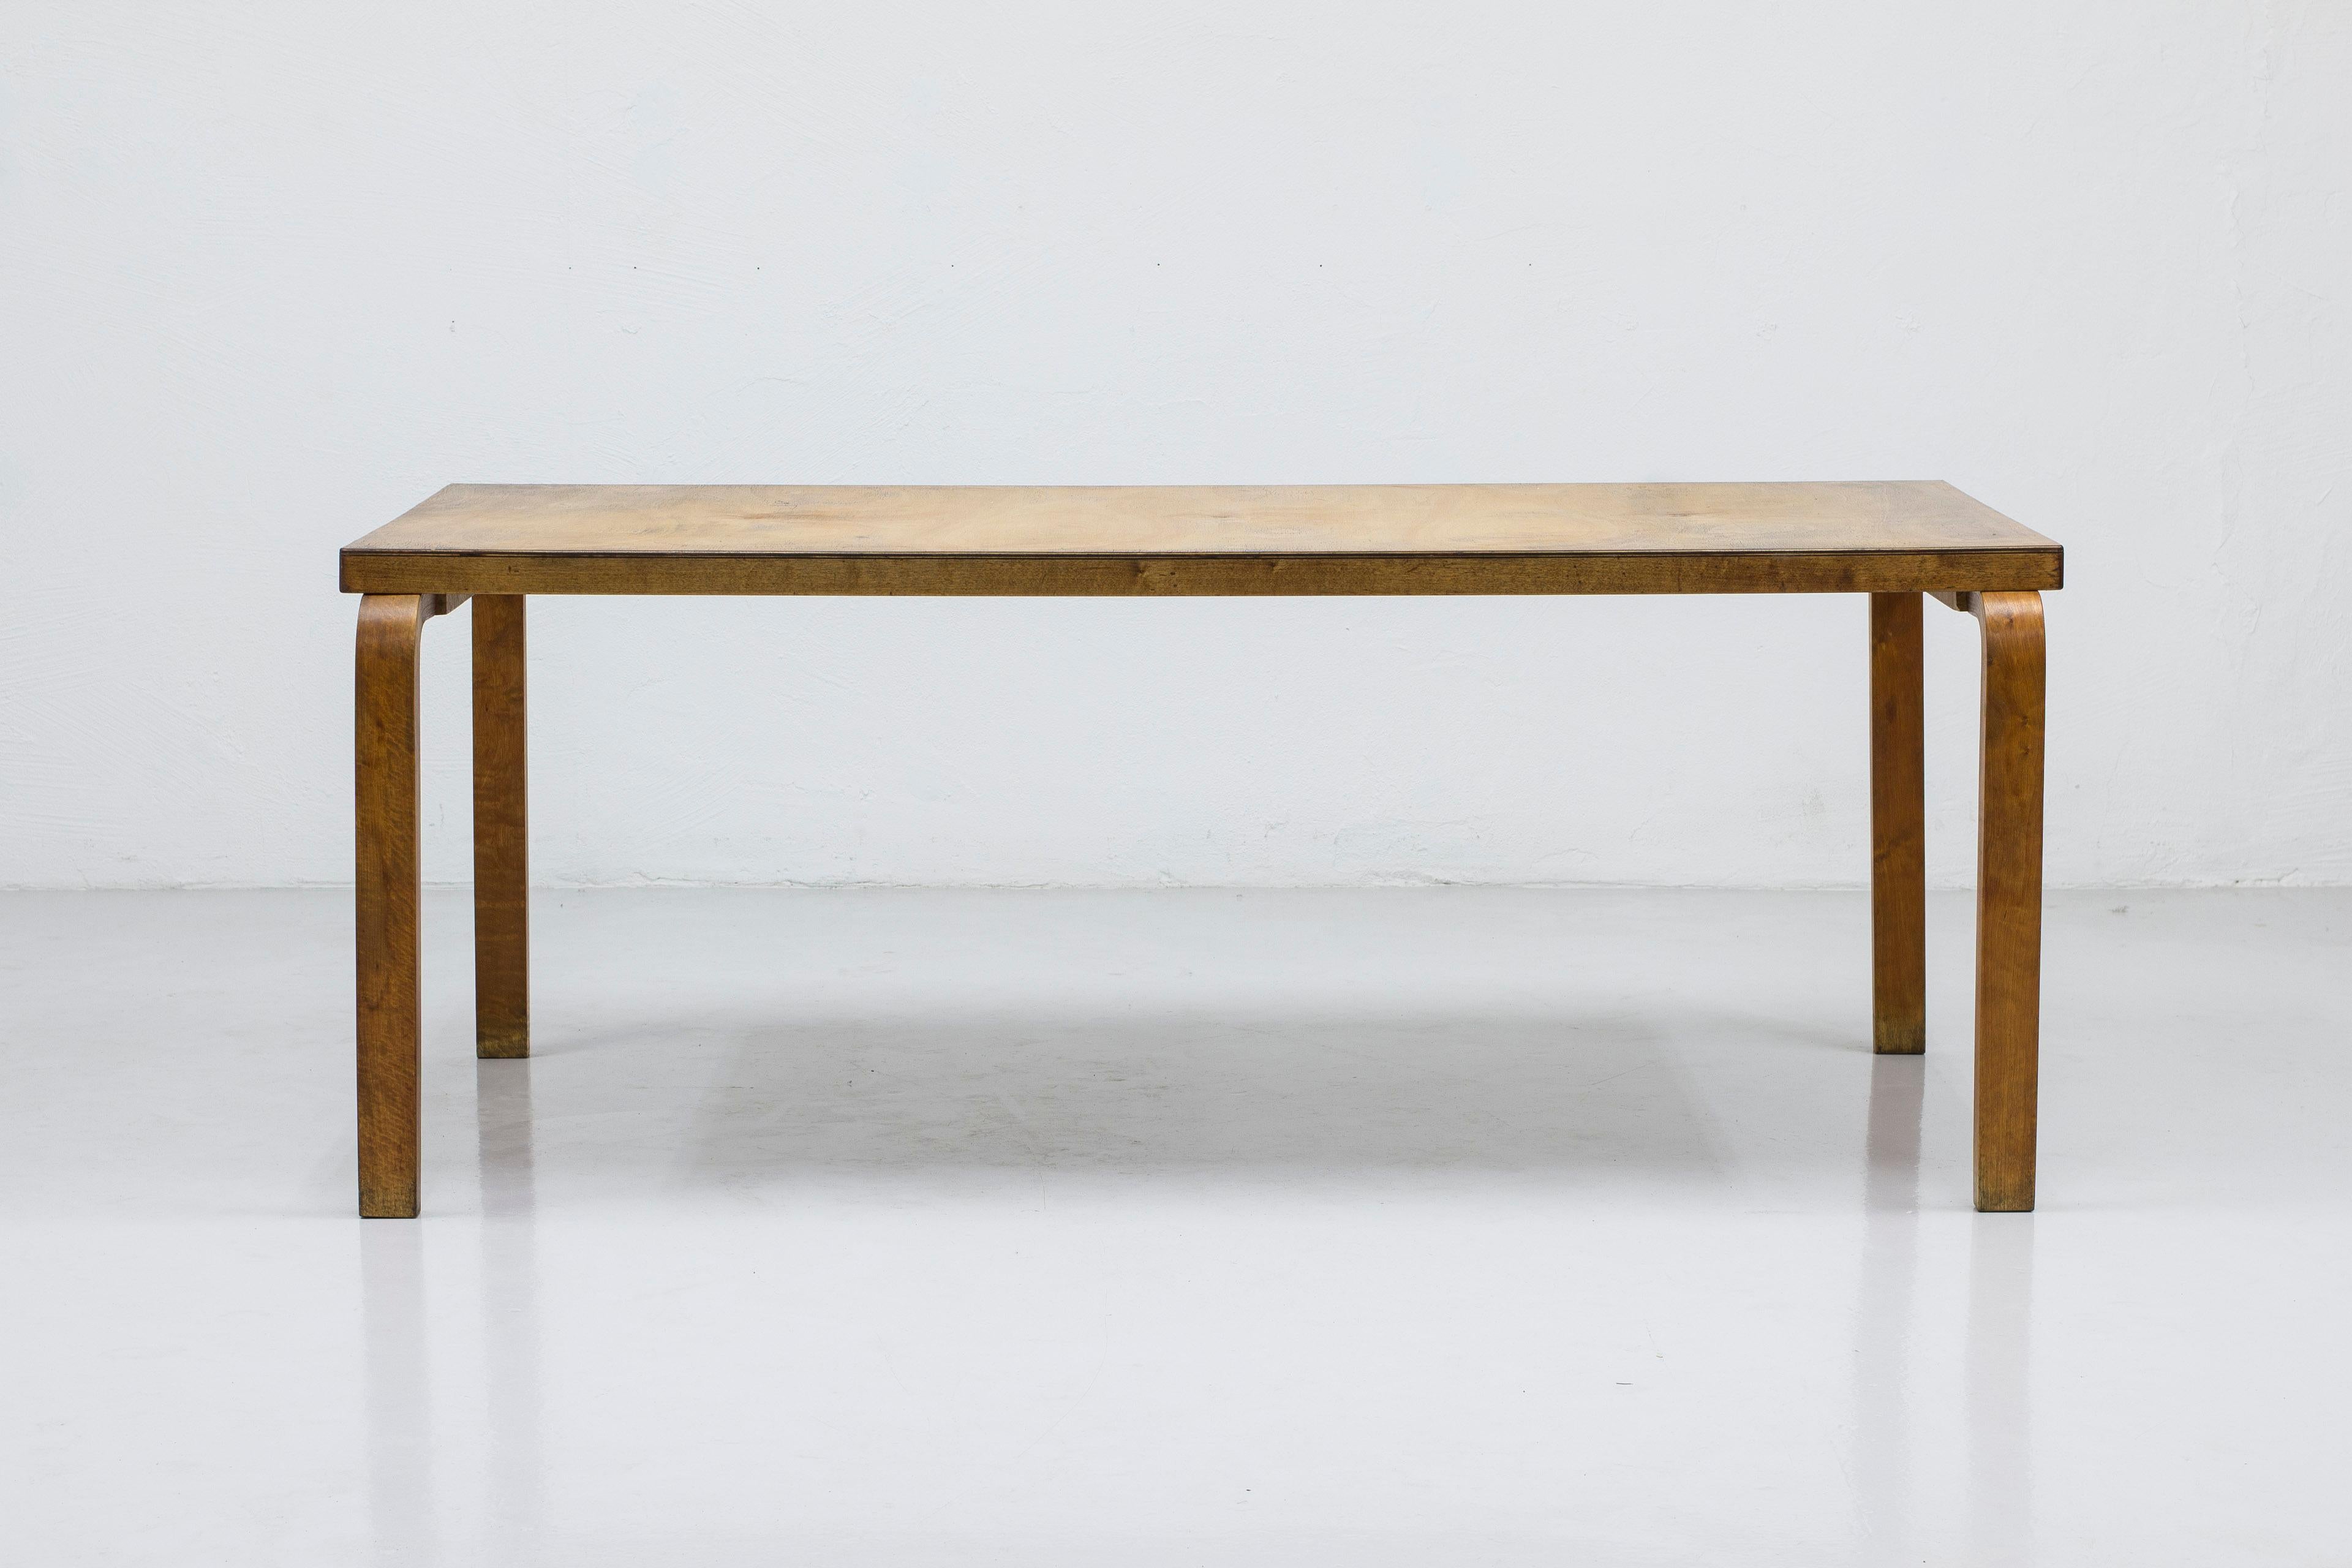 Premier exemplaire de la table de salle à manger modèle 83 conçue par Alvar Aalto. Produit à Turku, en Finlande, par Huonekalu-ja Rakennustyötehdas dans les années 1930. Signé avec le cachet Aalto design Made in Finland. Fabriqué en bouleau massif